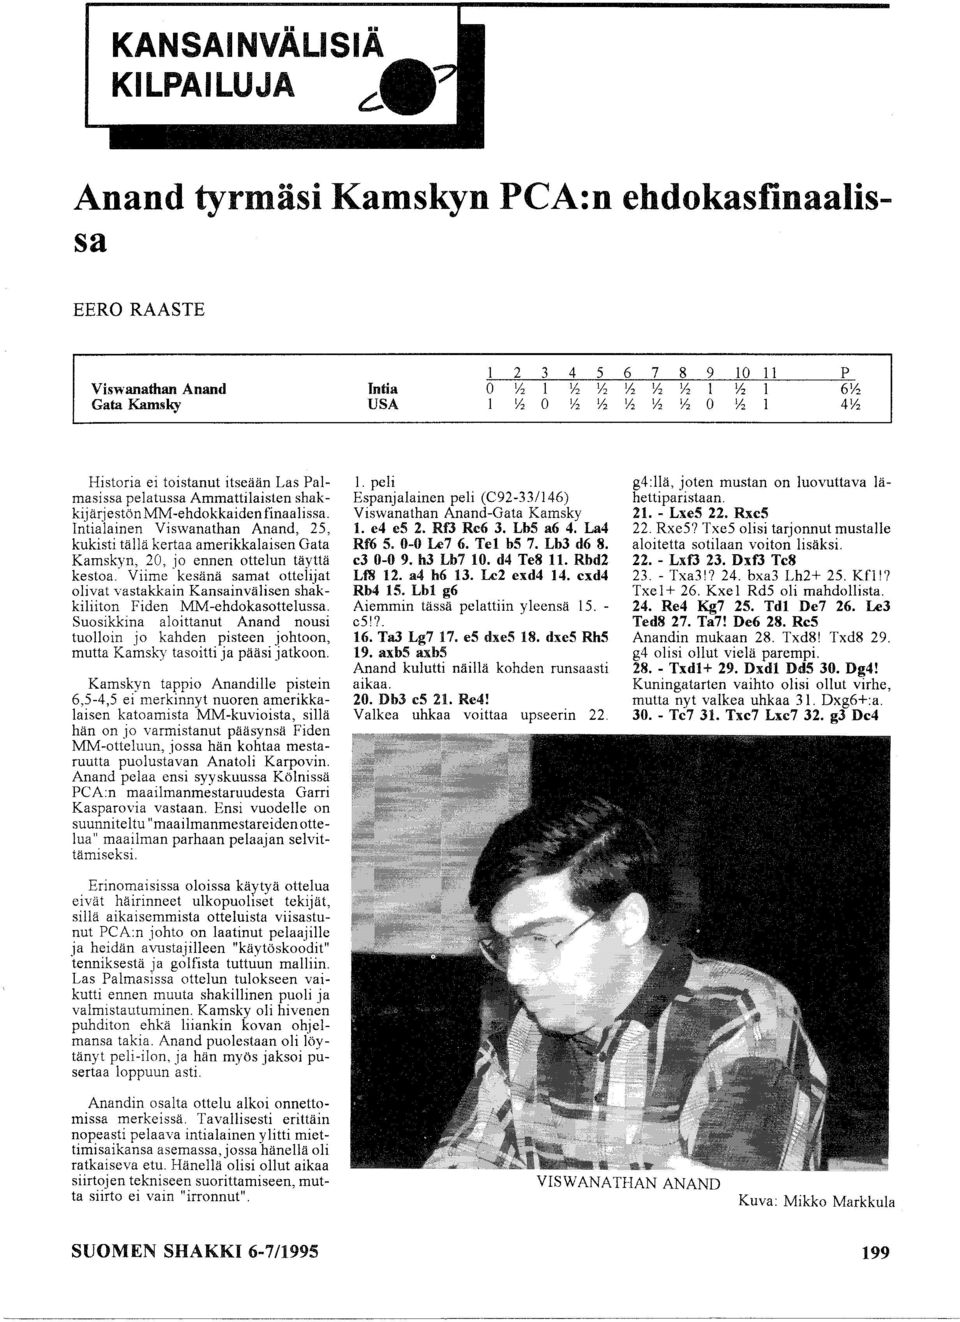 Intialainen Viswanathan Anand, 25, kukisti tällä kertaa amerikkalaisen Gata Kamskyn, 20, jo ennen ottelun täyttä kestoa.